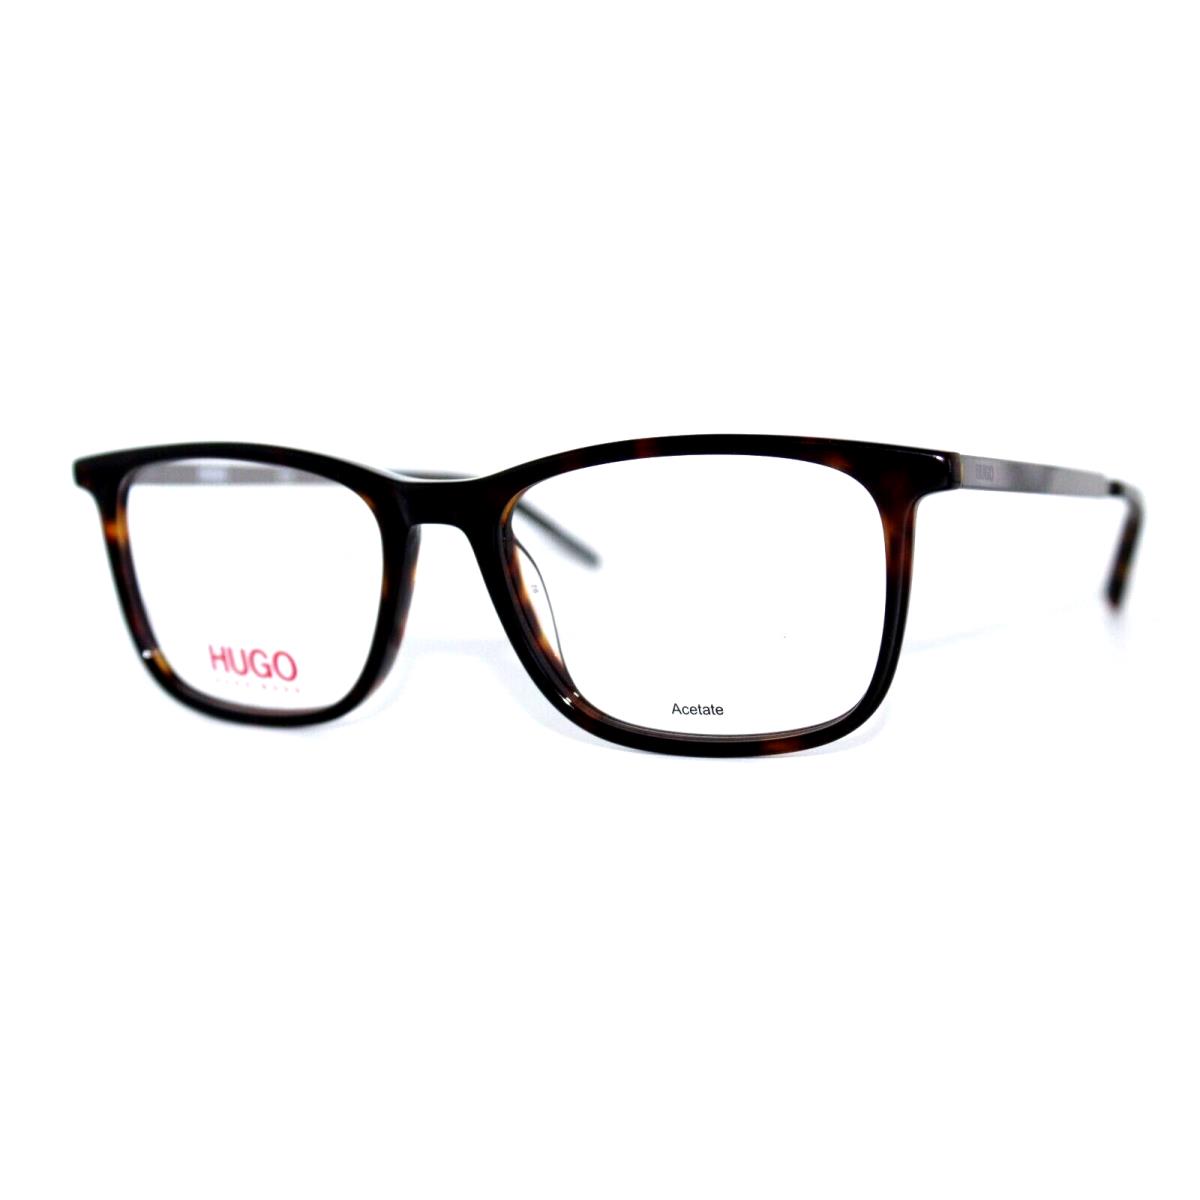 Hugo Boss HG 1018 086 Havana Eyeglasses Frames 52-17-145MM W/case - Frame: Havana